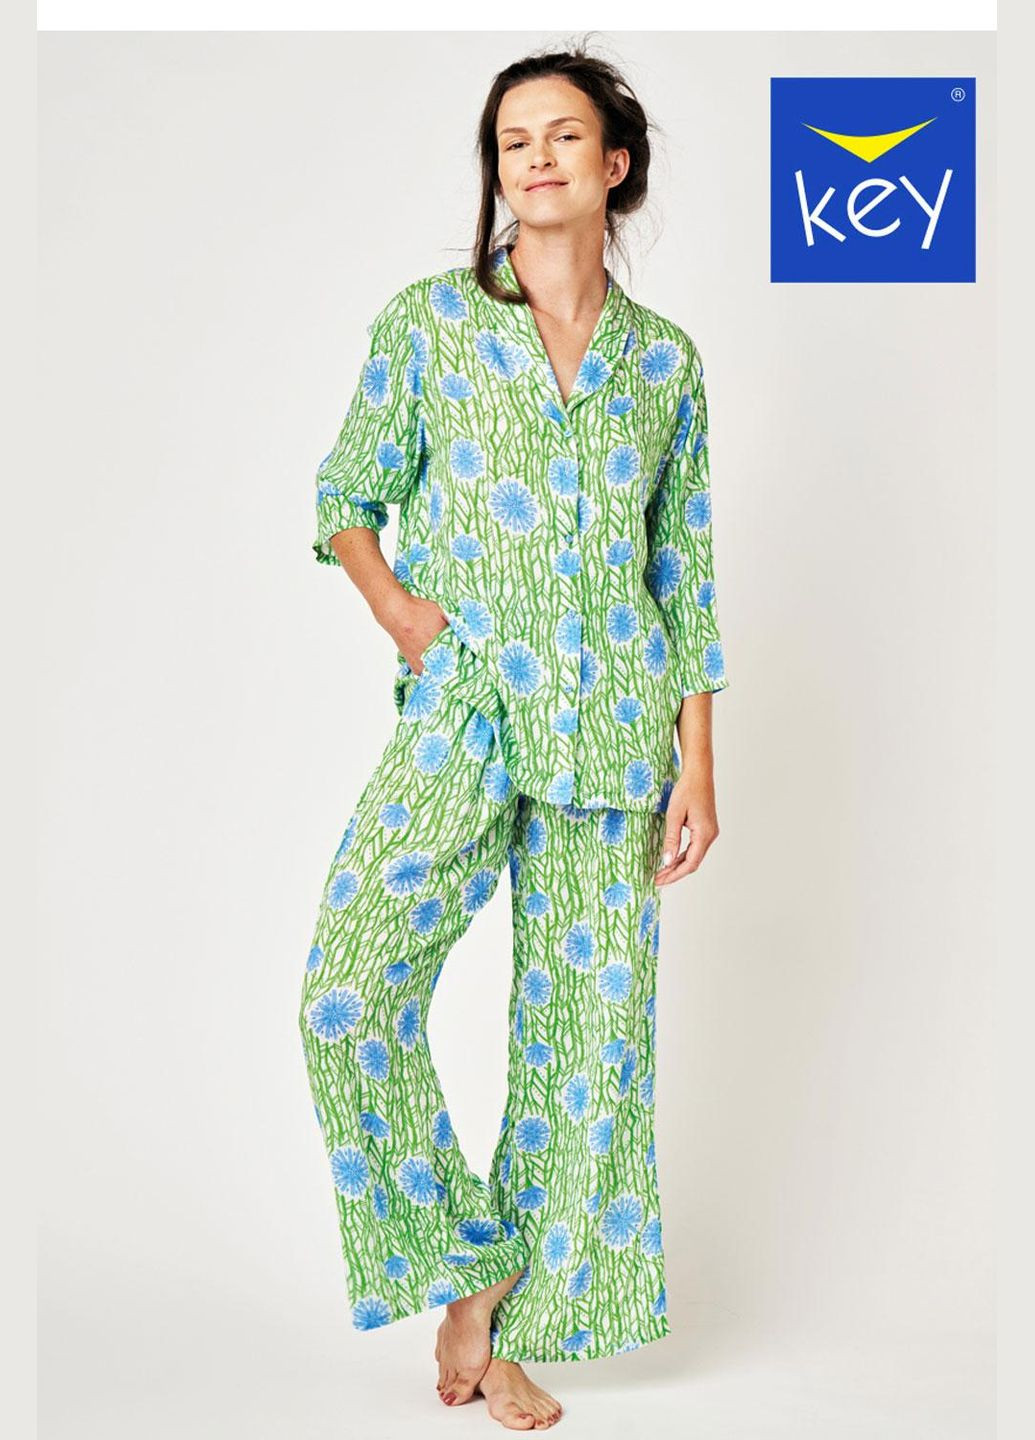 Зеленая пижама женская lns 509 a24 l зеленый, голубой Key